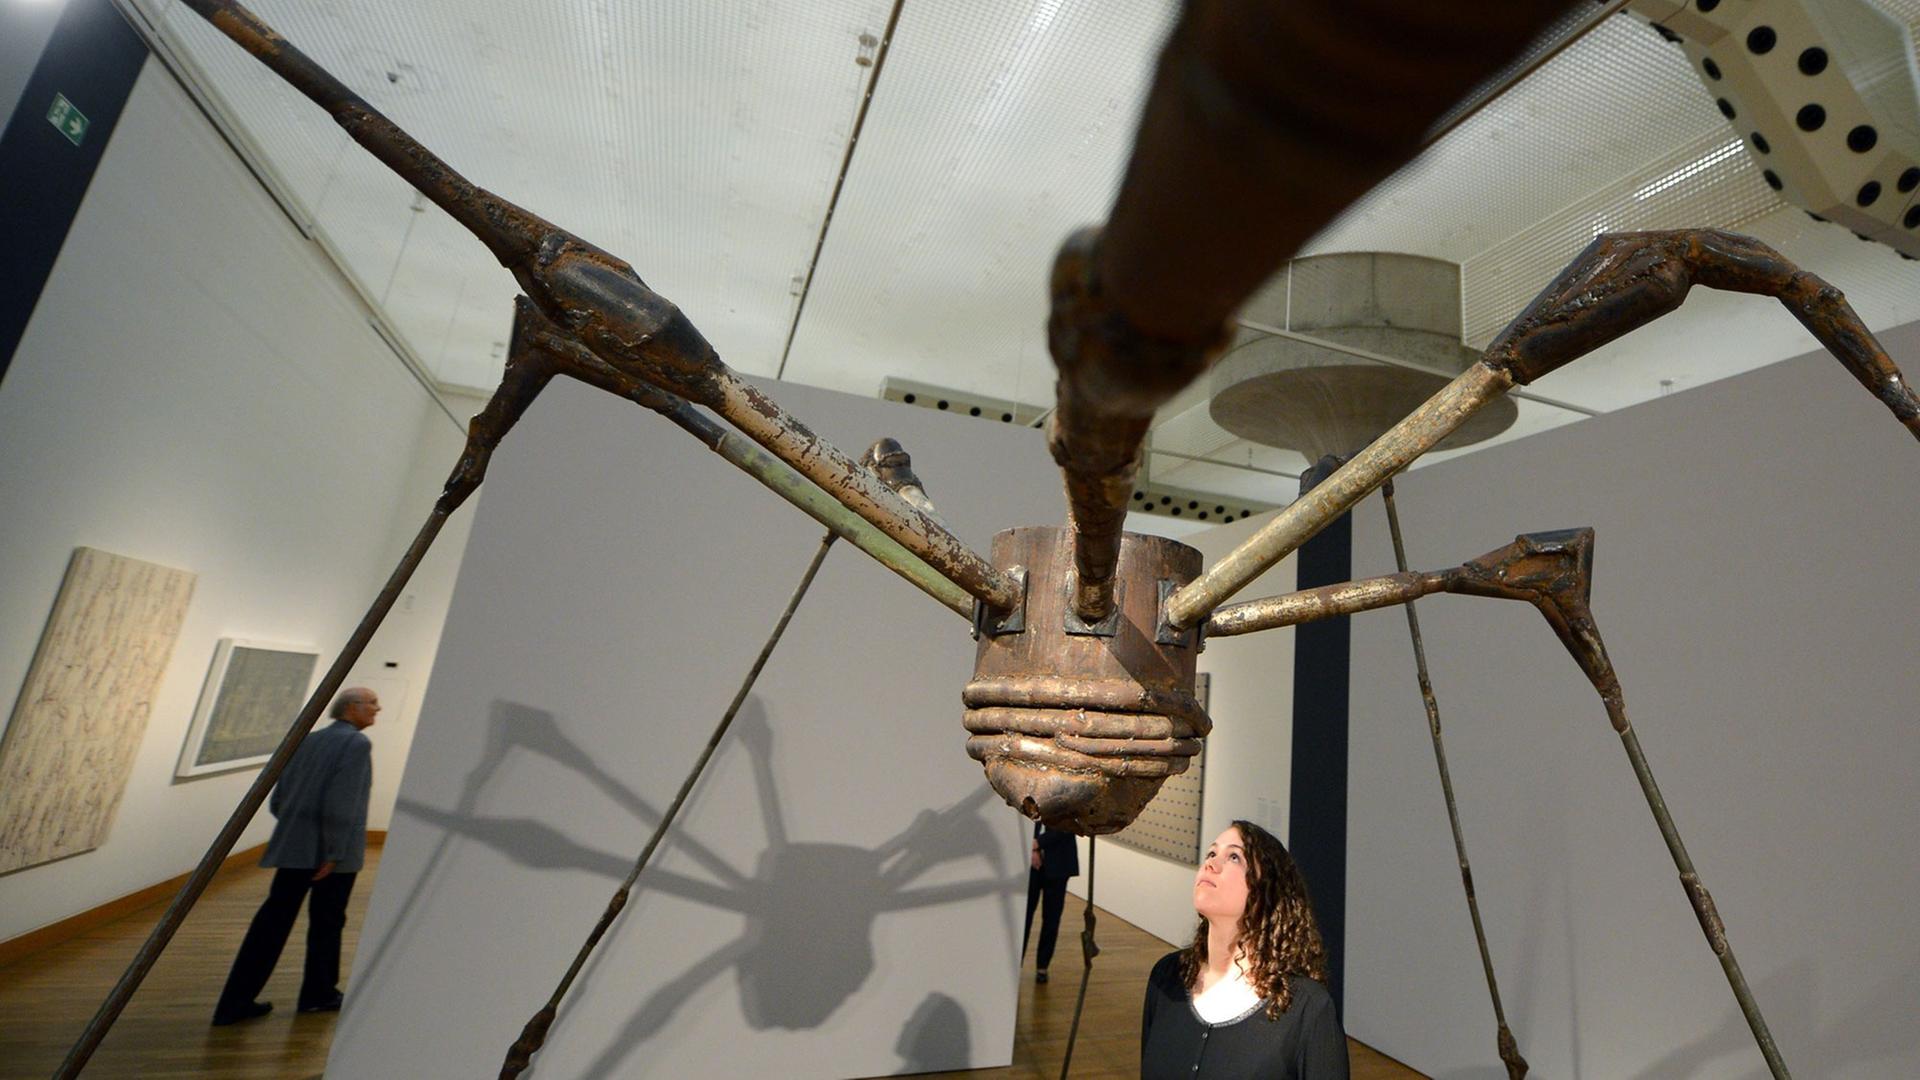 Die Skulptur "Spider" von Louise Bourgeois